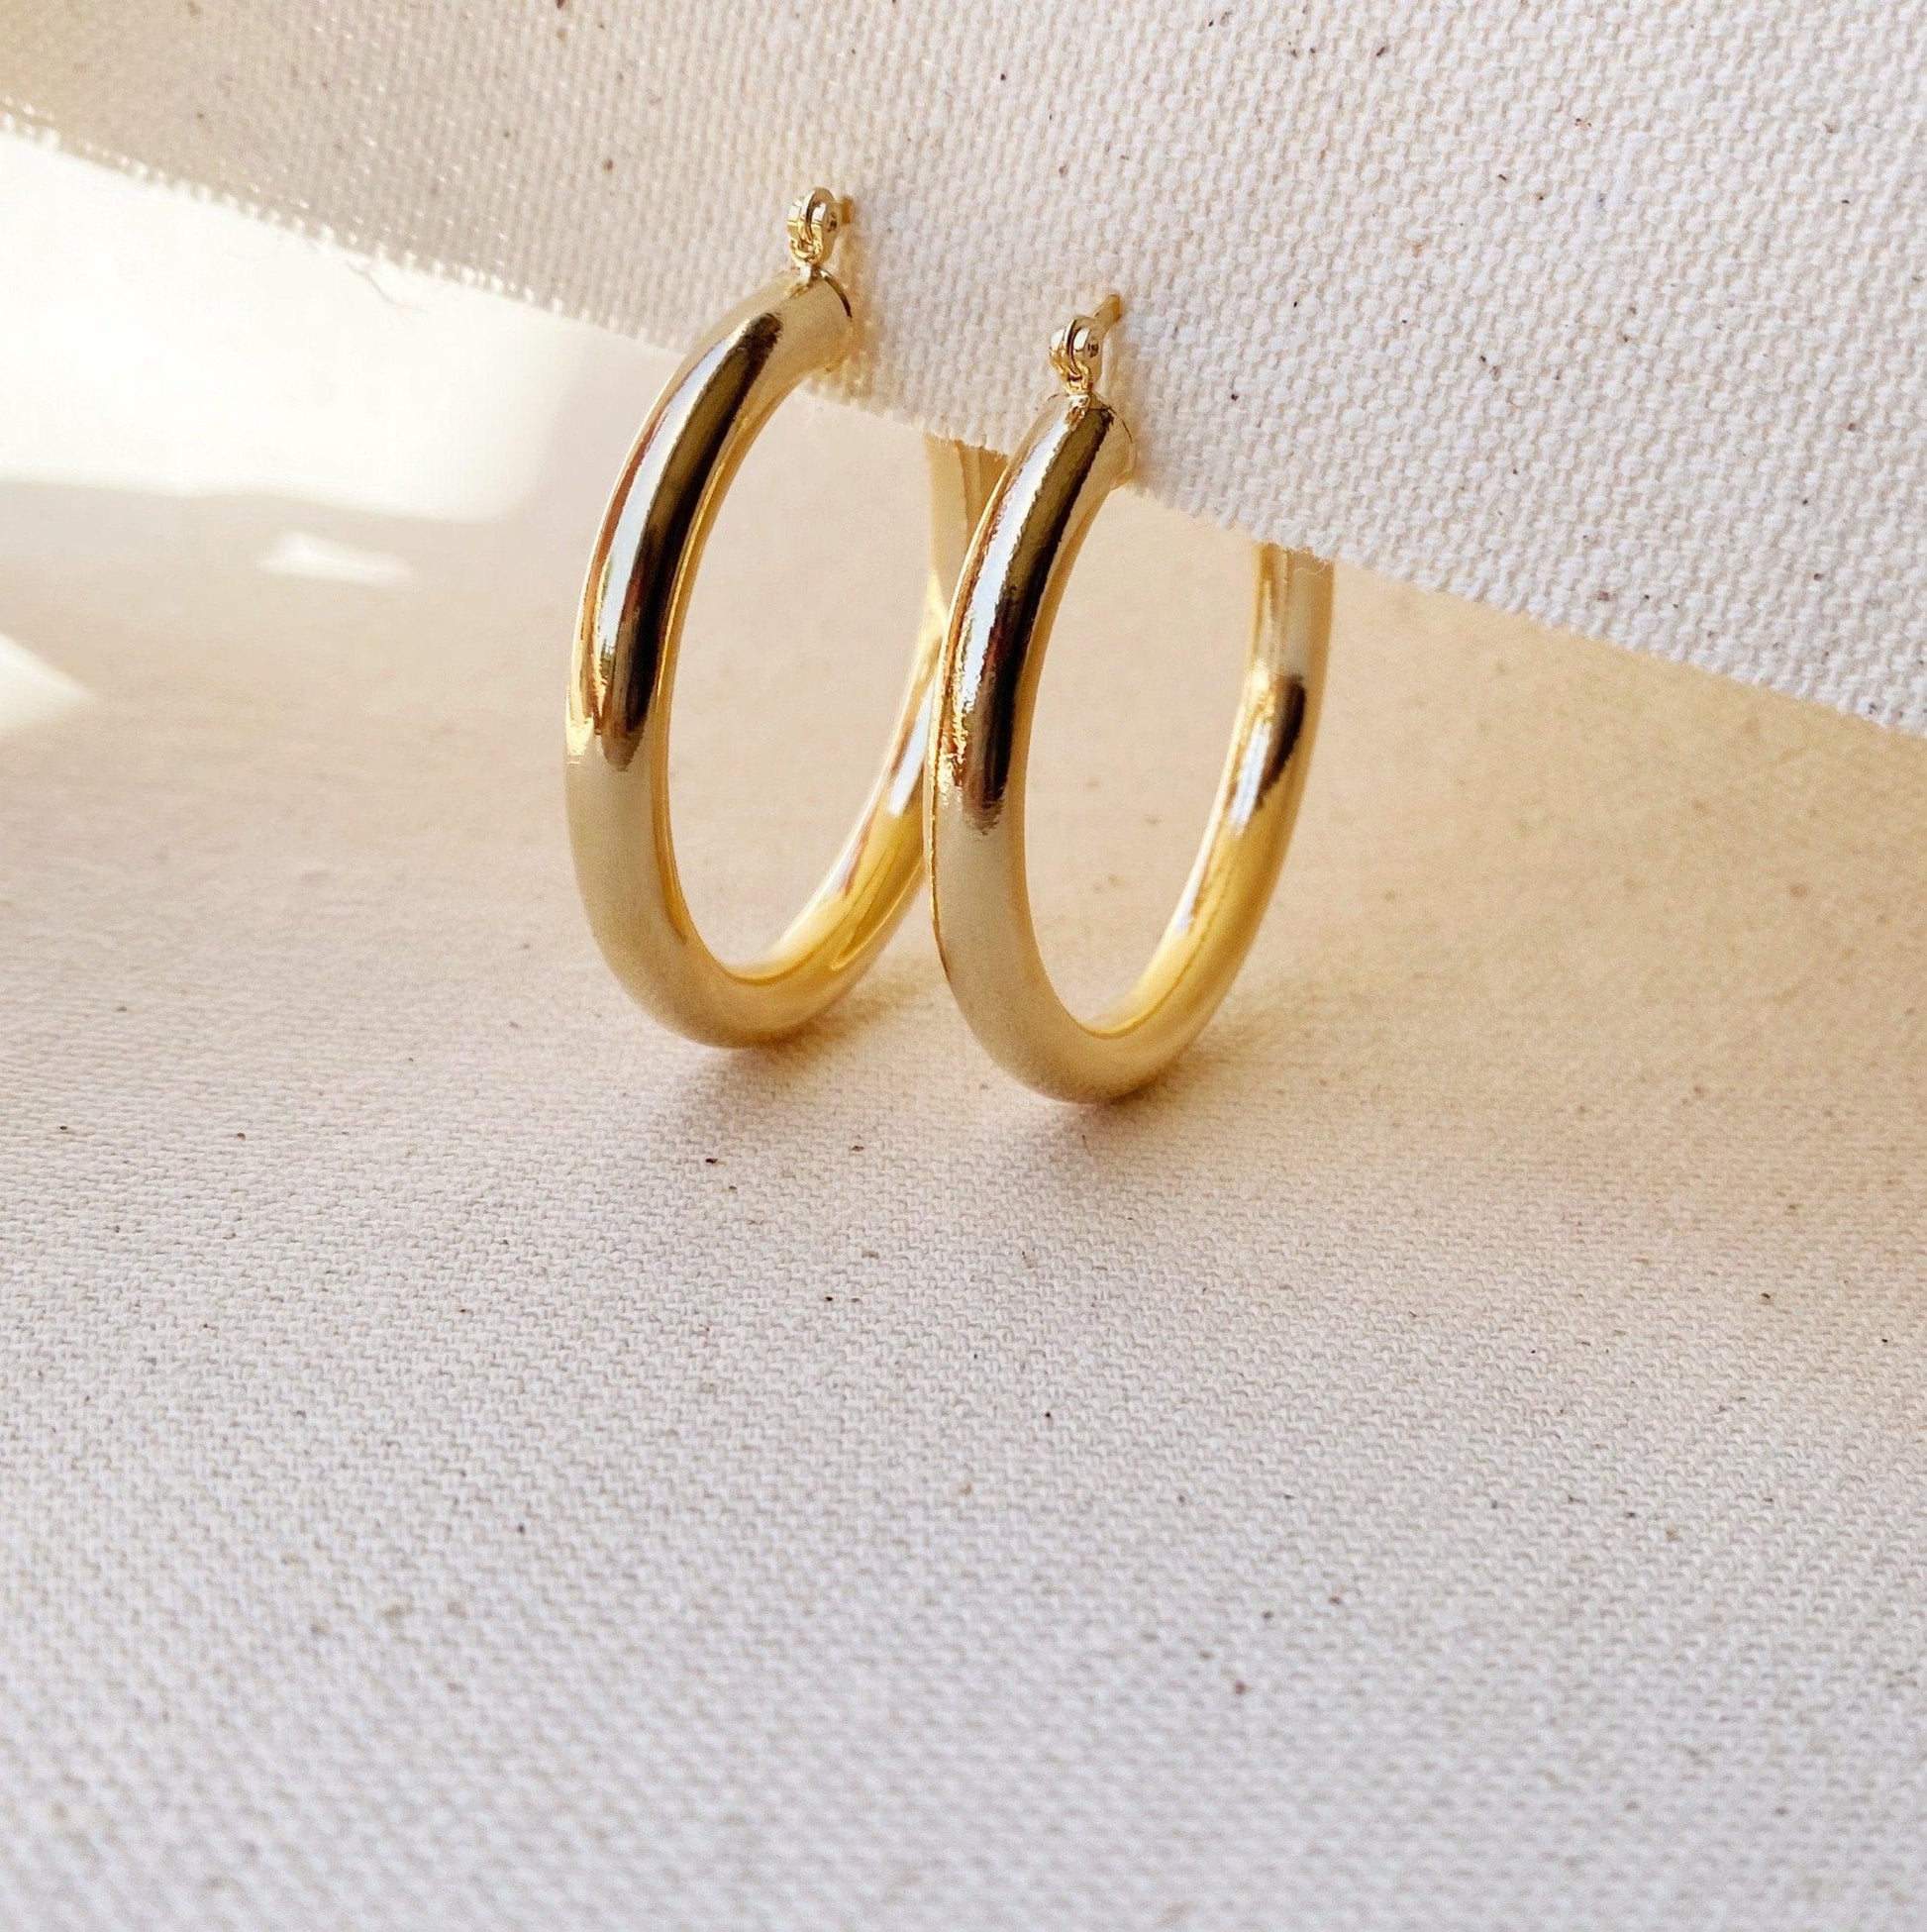 GoldFi 18k Gold Filled Selena Inspired Hoop Earrings 44 mm Diameter